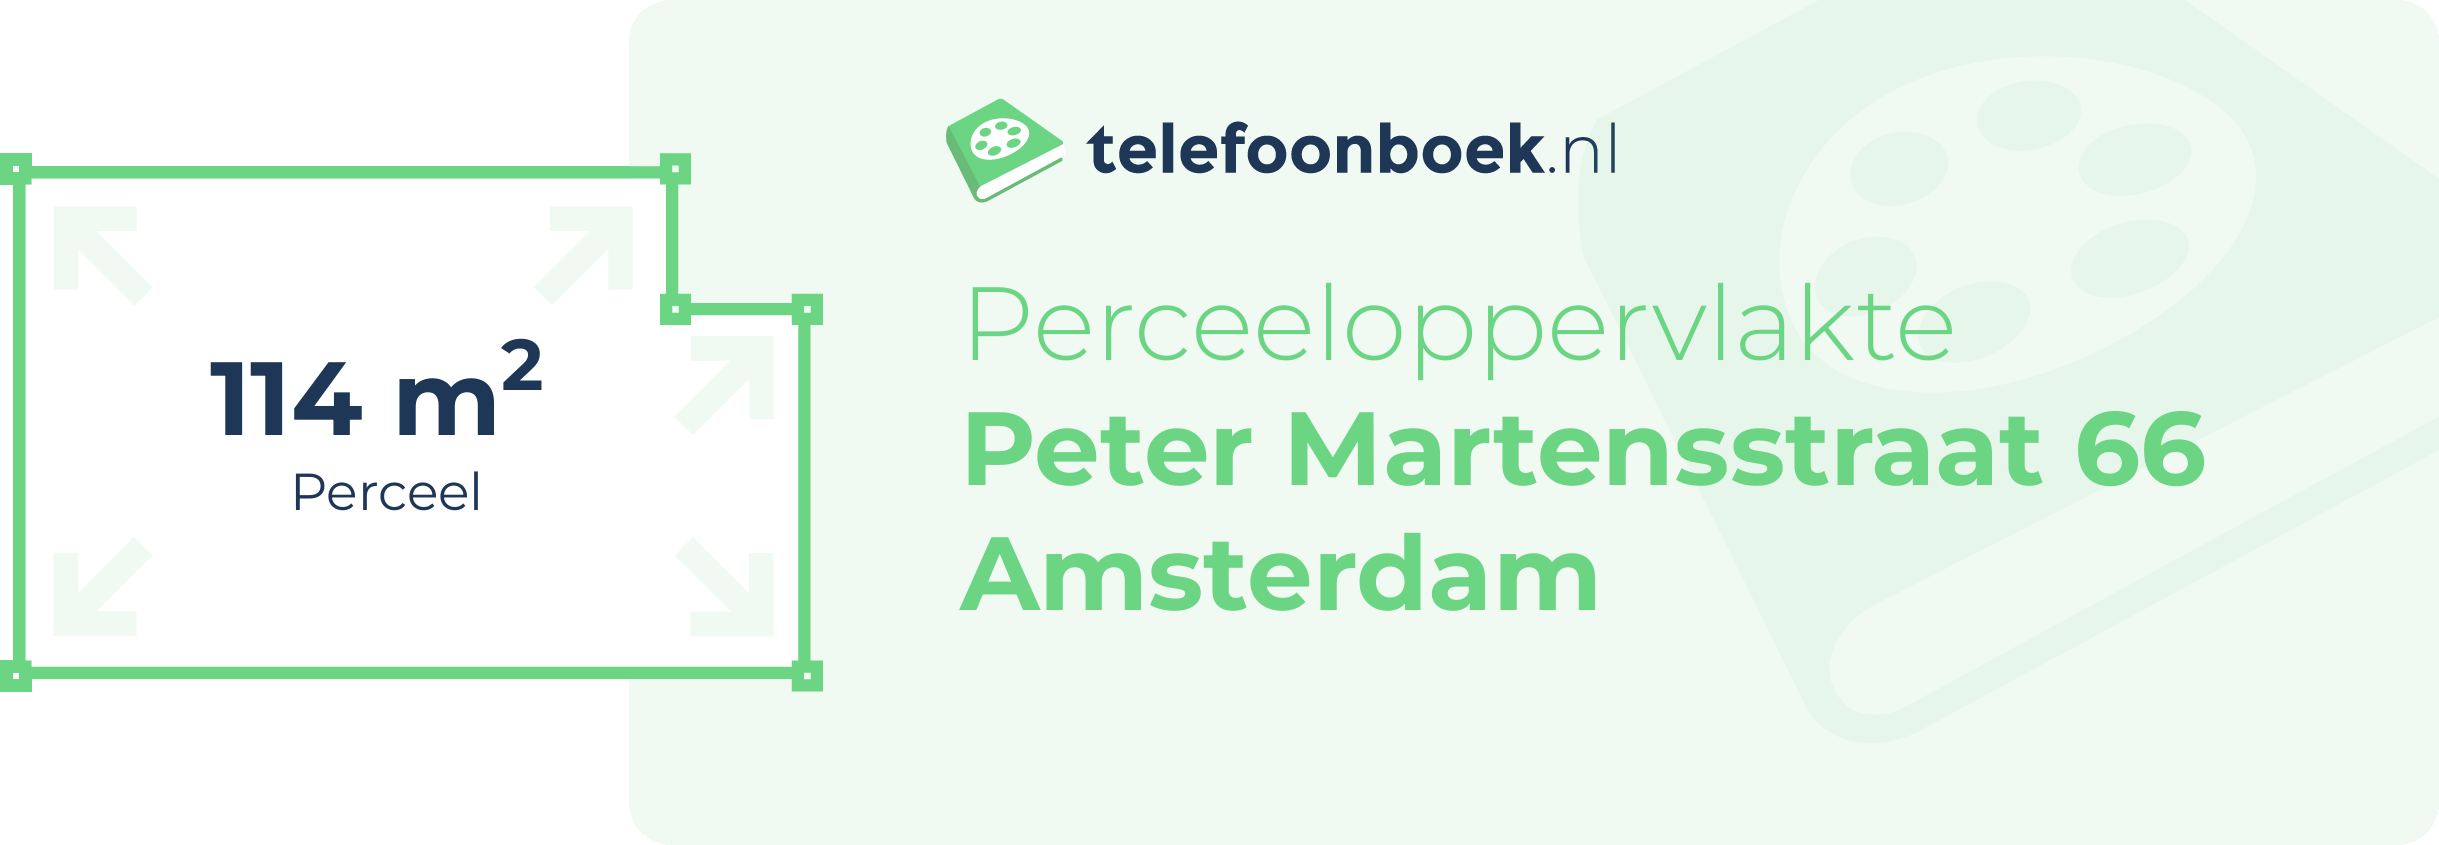 Perceeloppervlakte Peter Martensstraat 66 Amsterdam